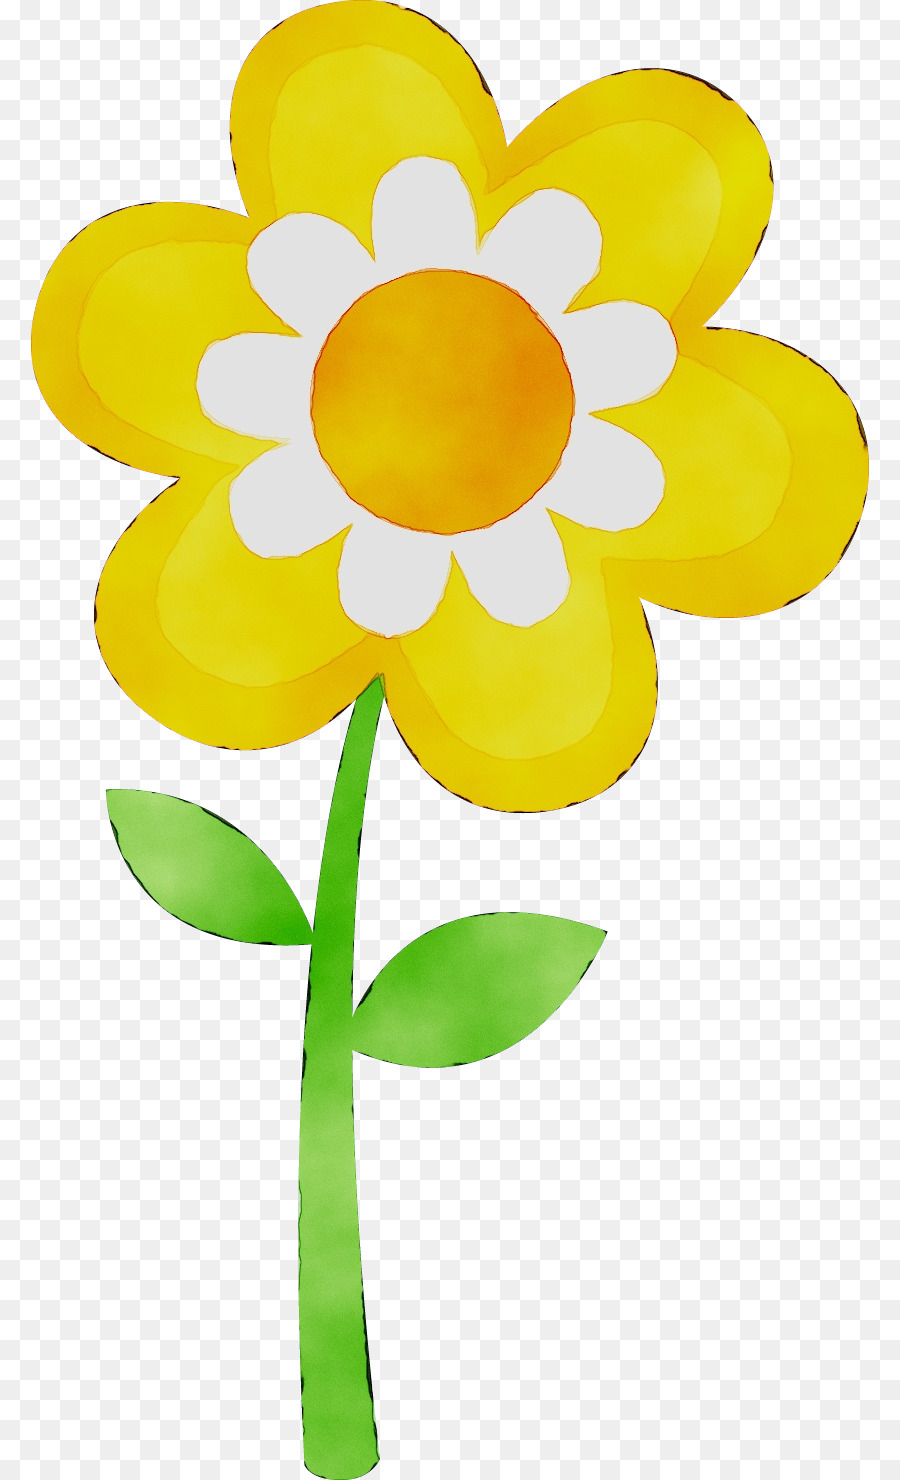 ClipArt Flower Kostenlose Inhalte Image Portable Network Graphics - 